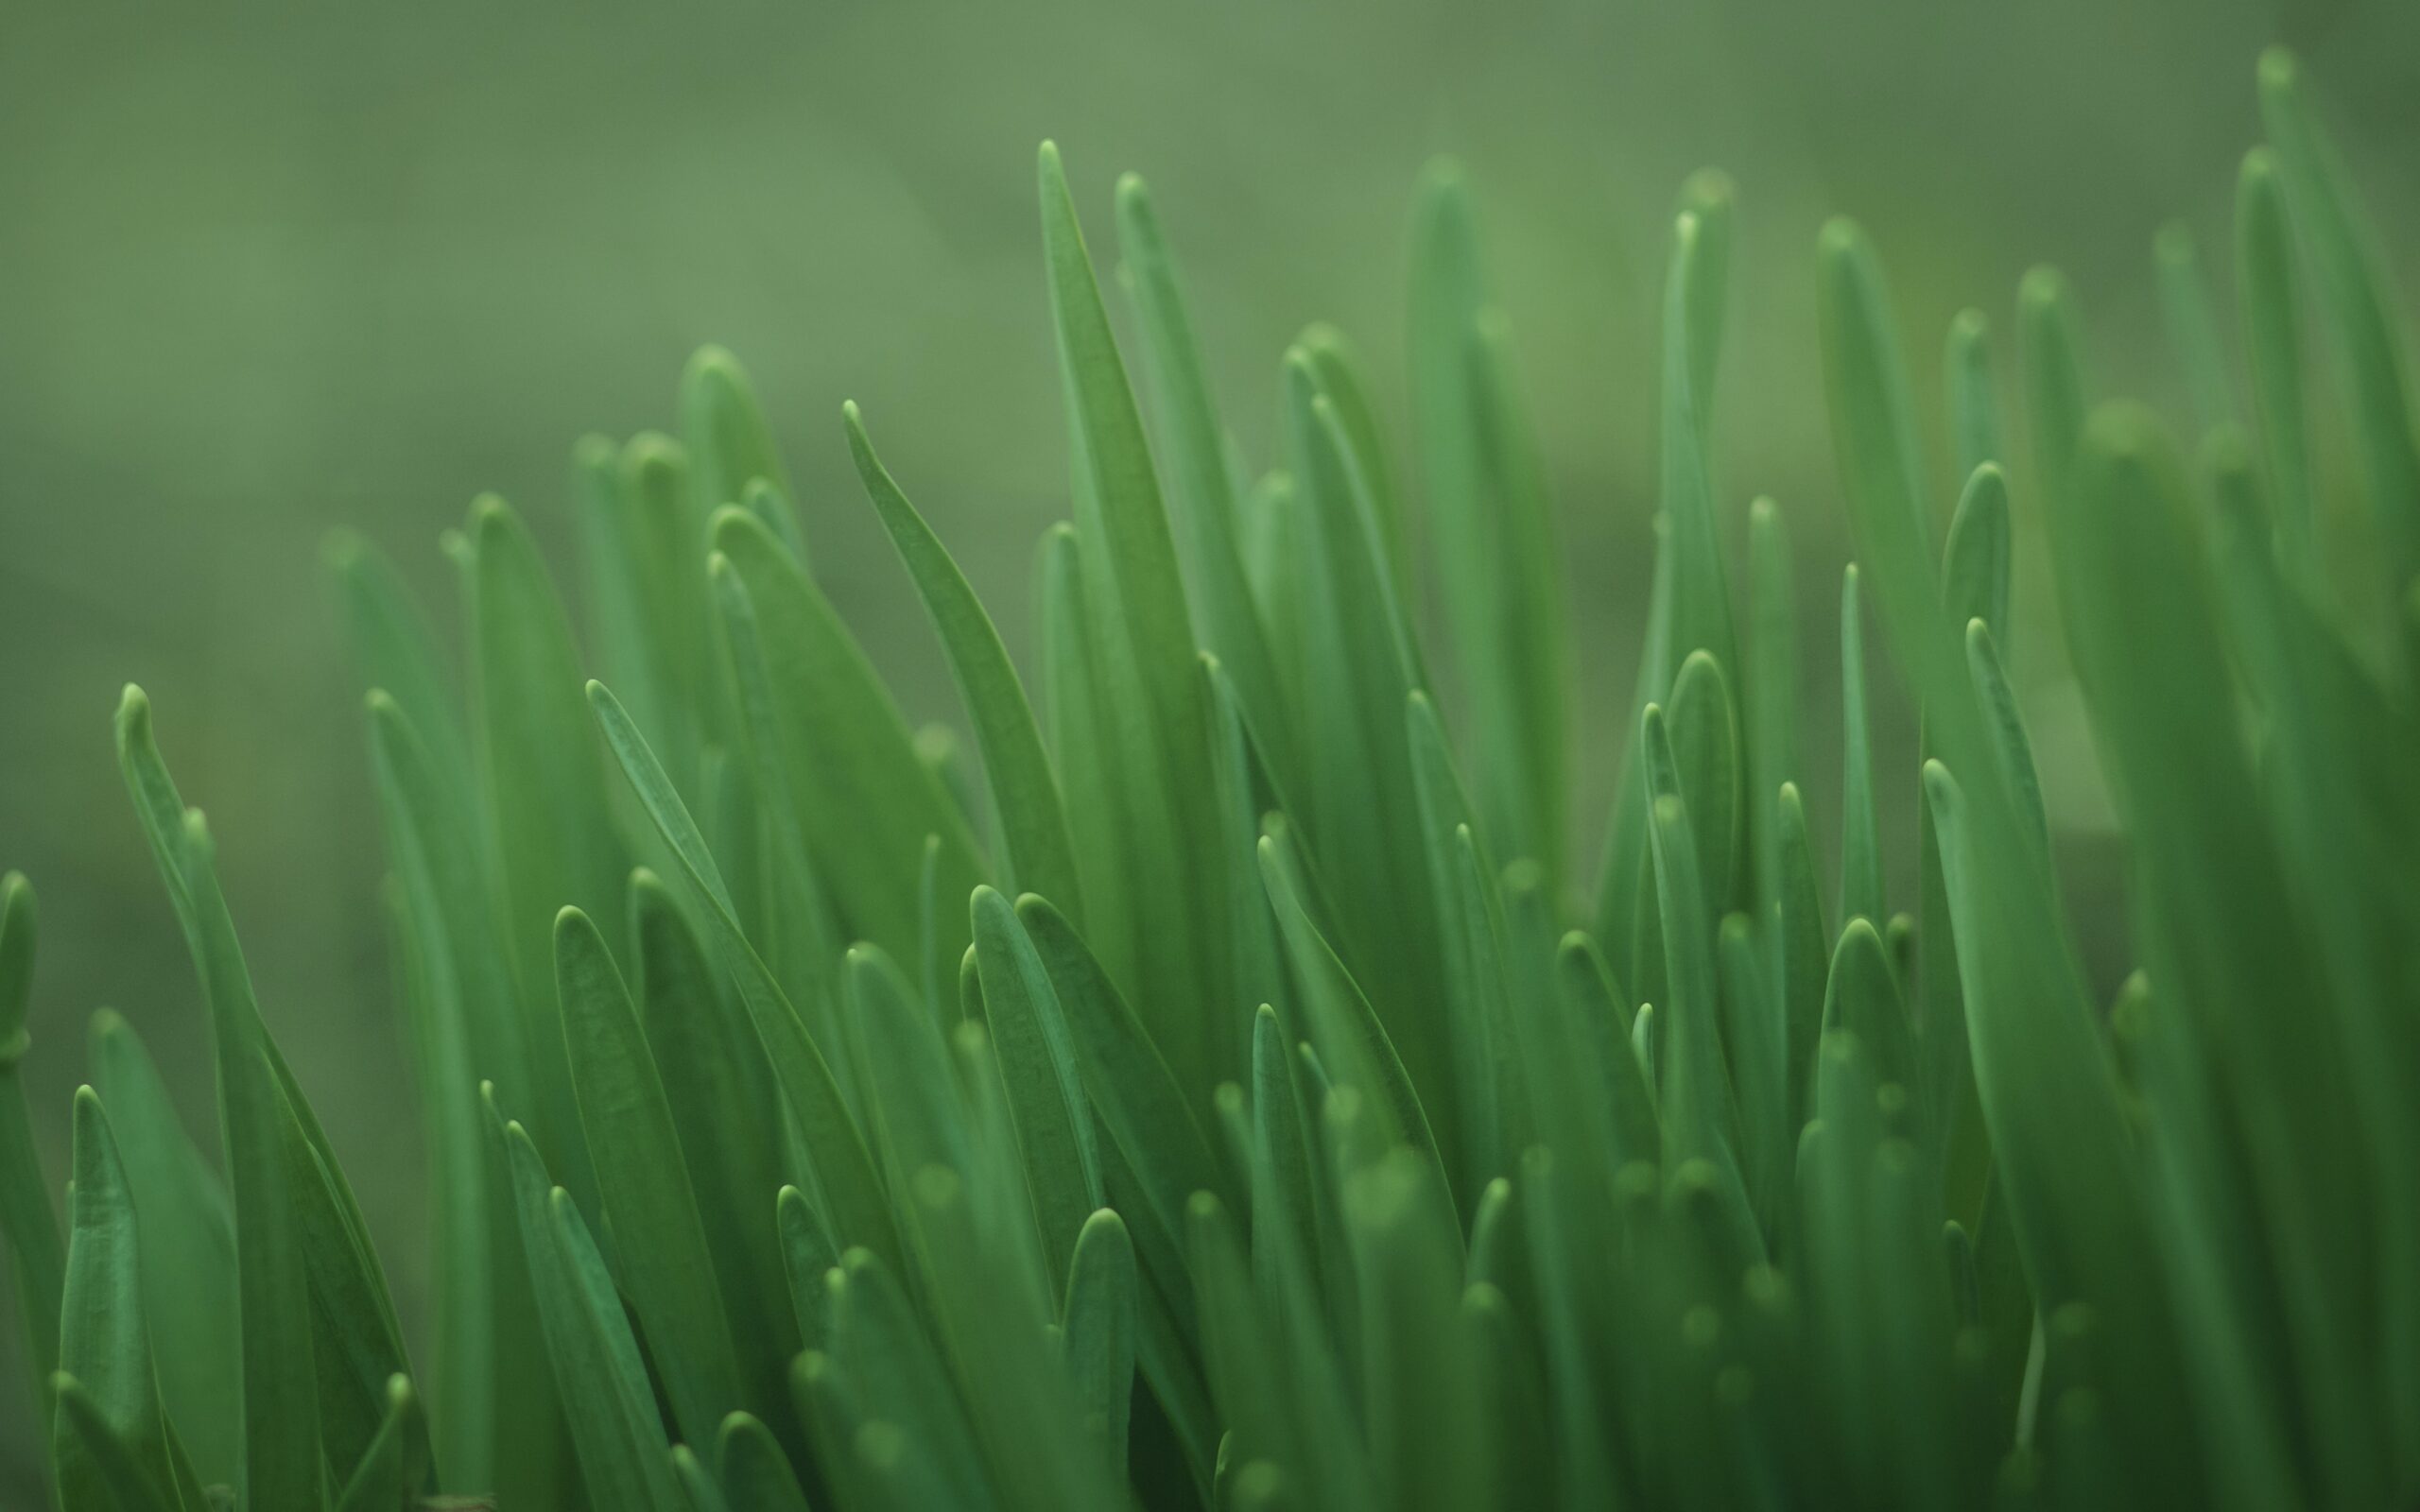 A close up photograph of grass.